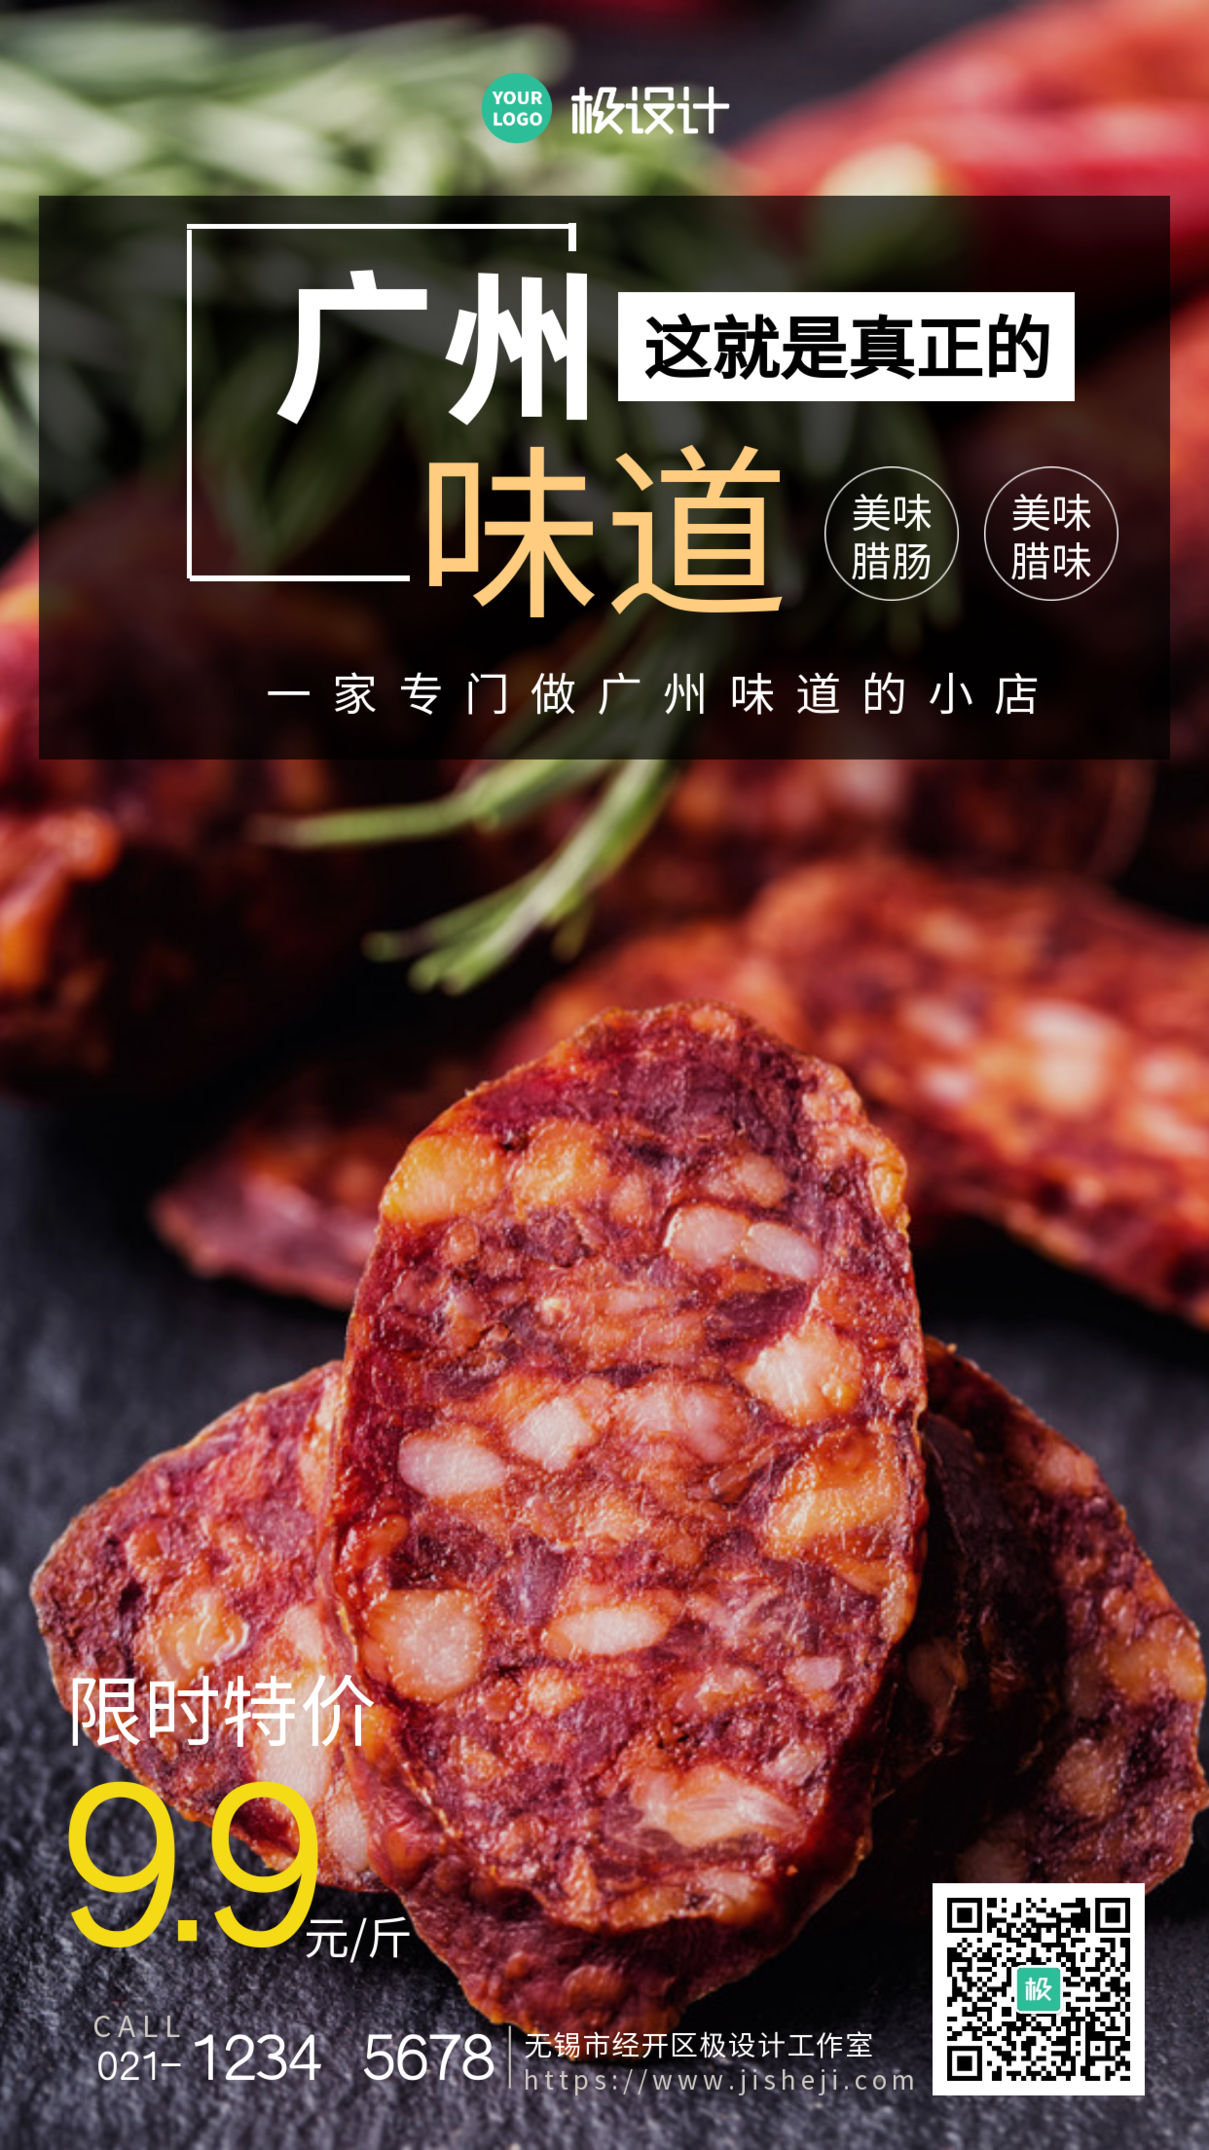 简约风格这就是广州味道促销手机海报